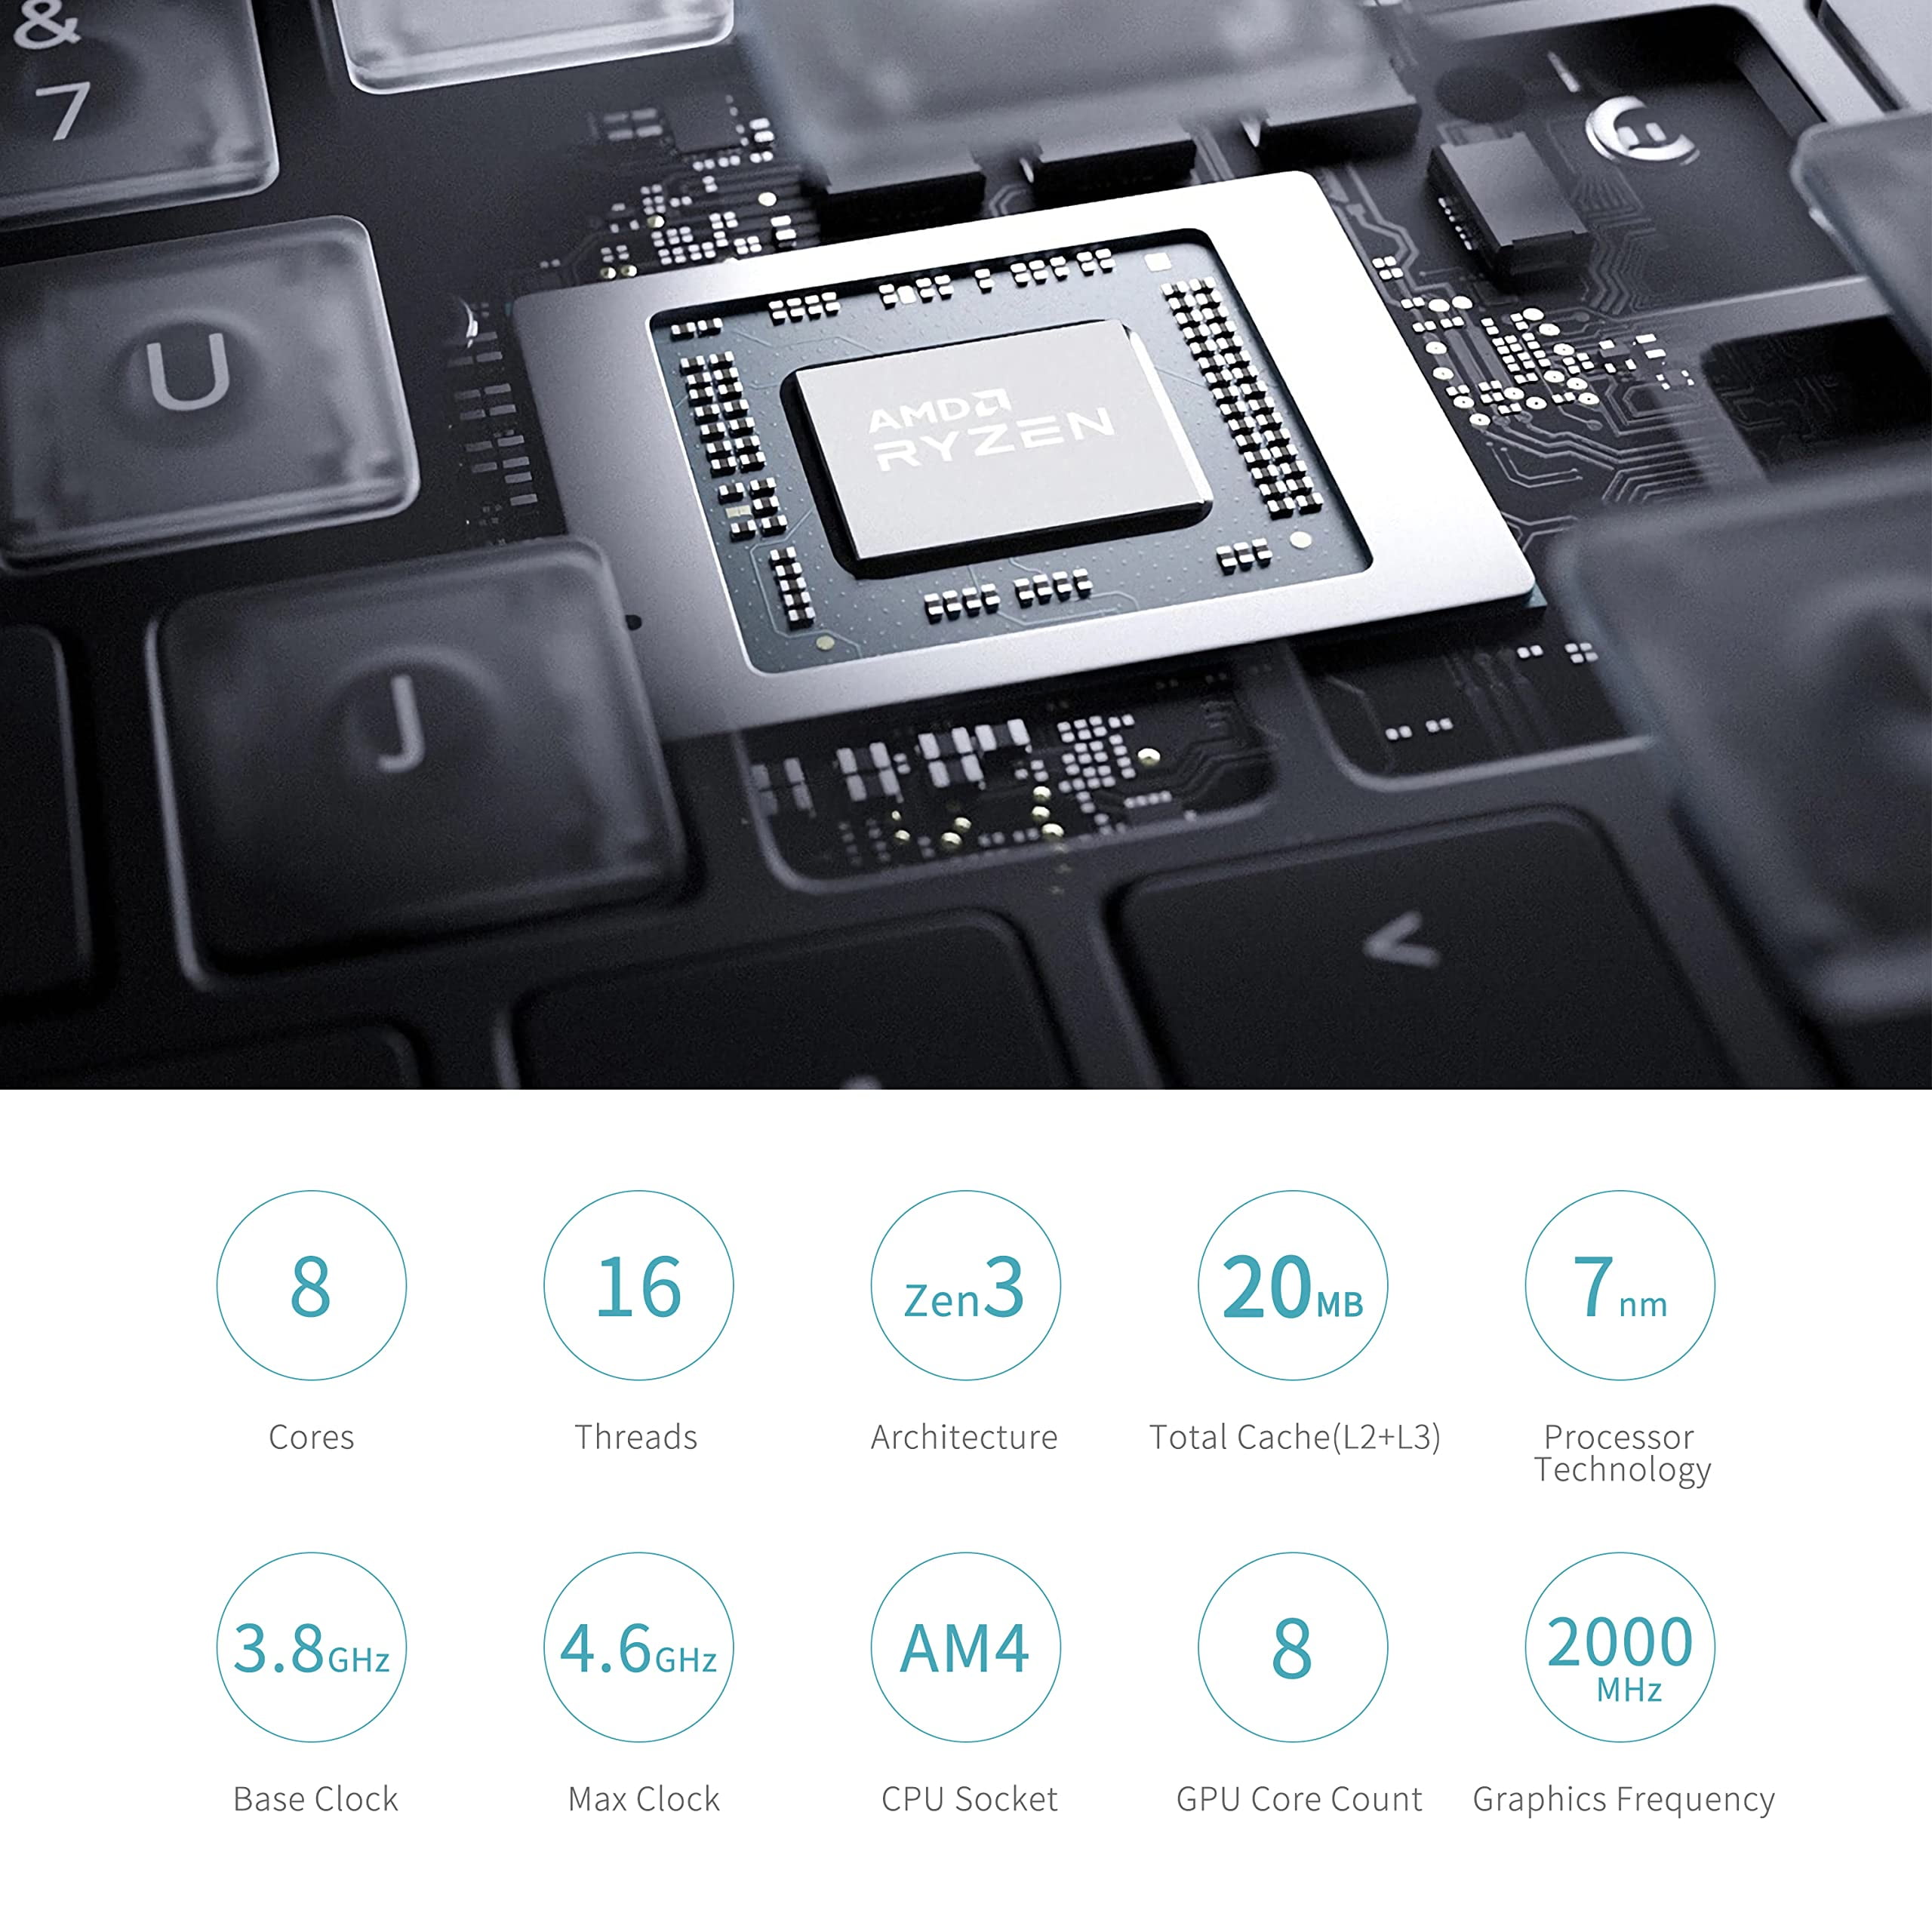 MINISFORUM Elitemini X500 Mini PC AMD Ryzen 7 5700G India